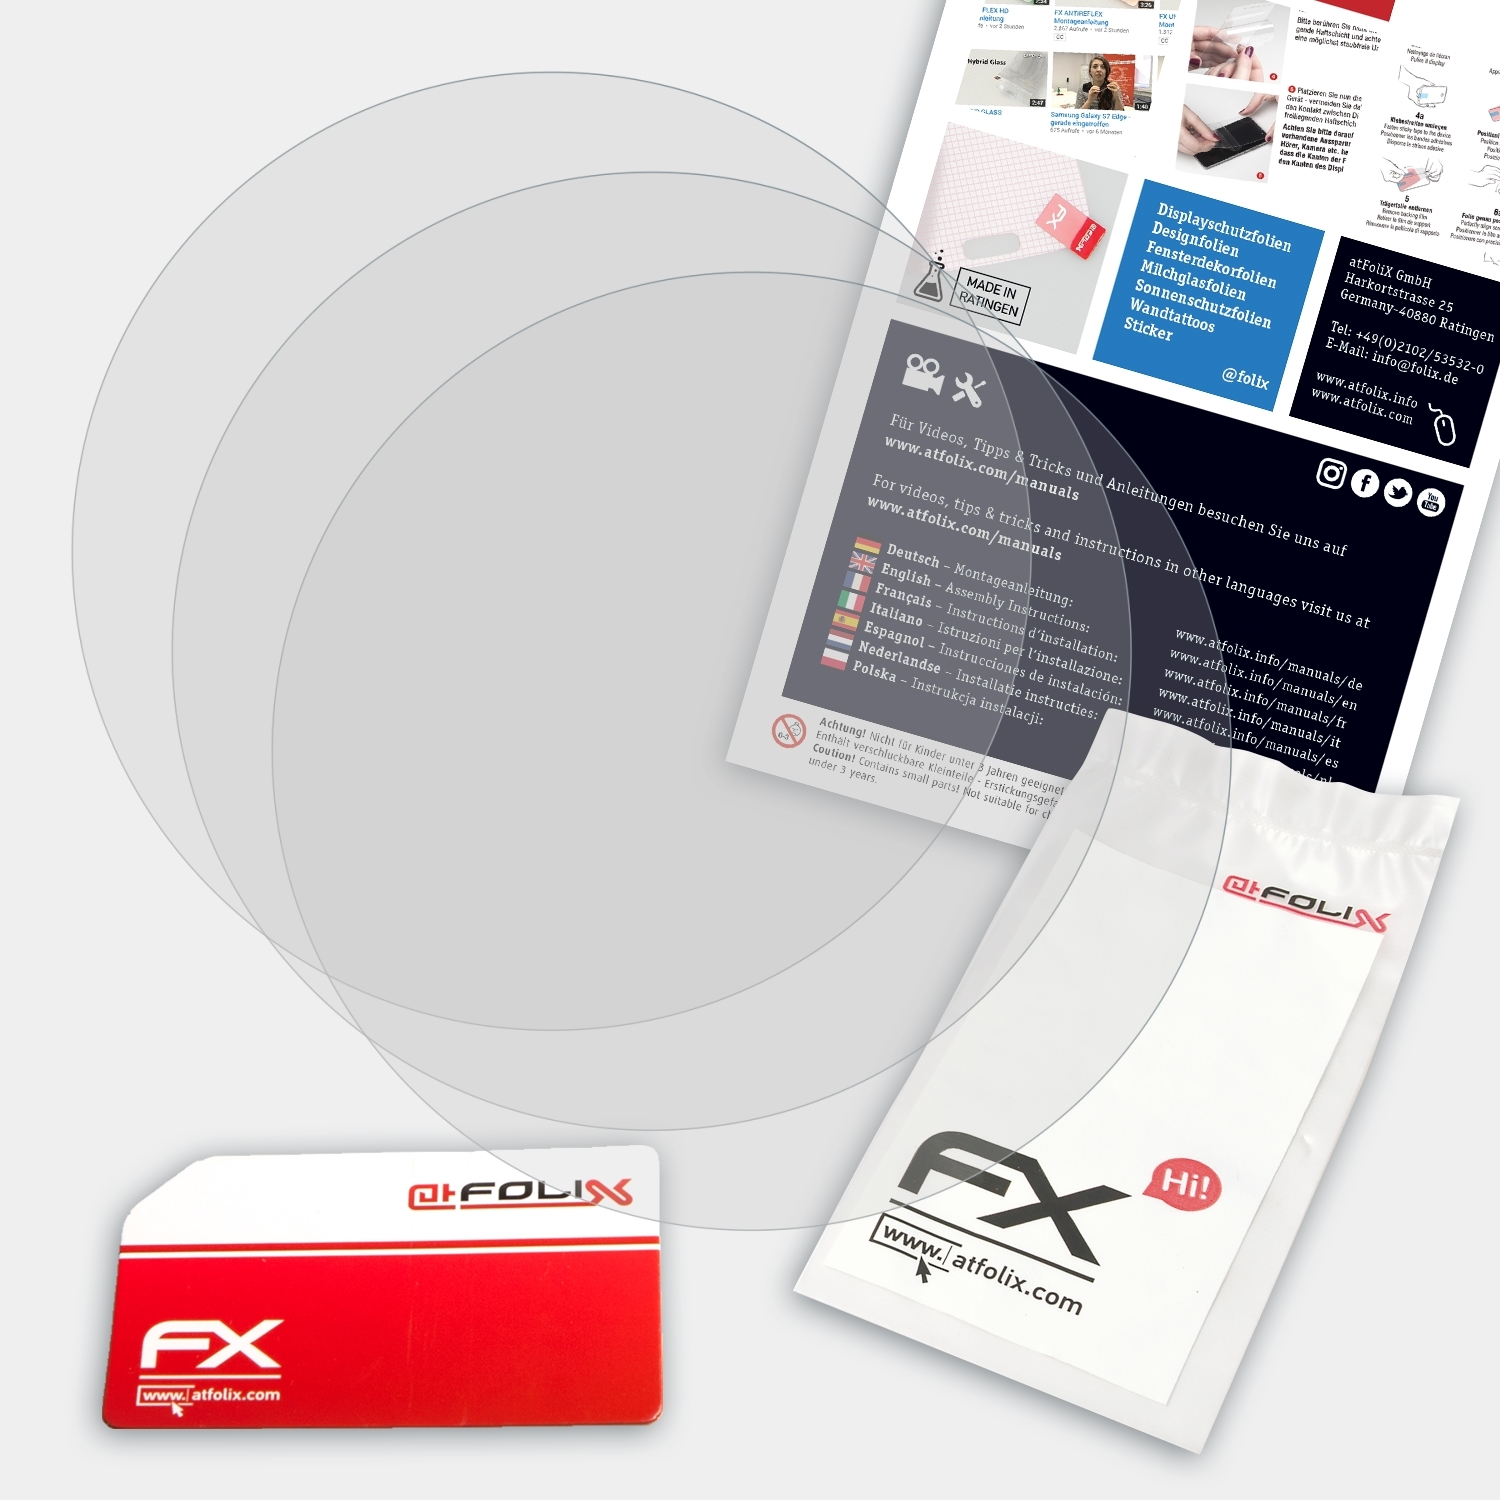 ATFOLIX FX-Antireflex Casio Displayschutz(für 3x GBD-100)